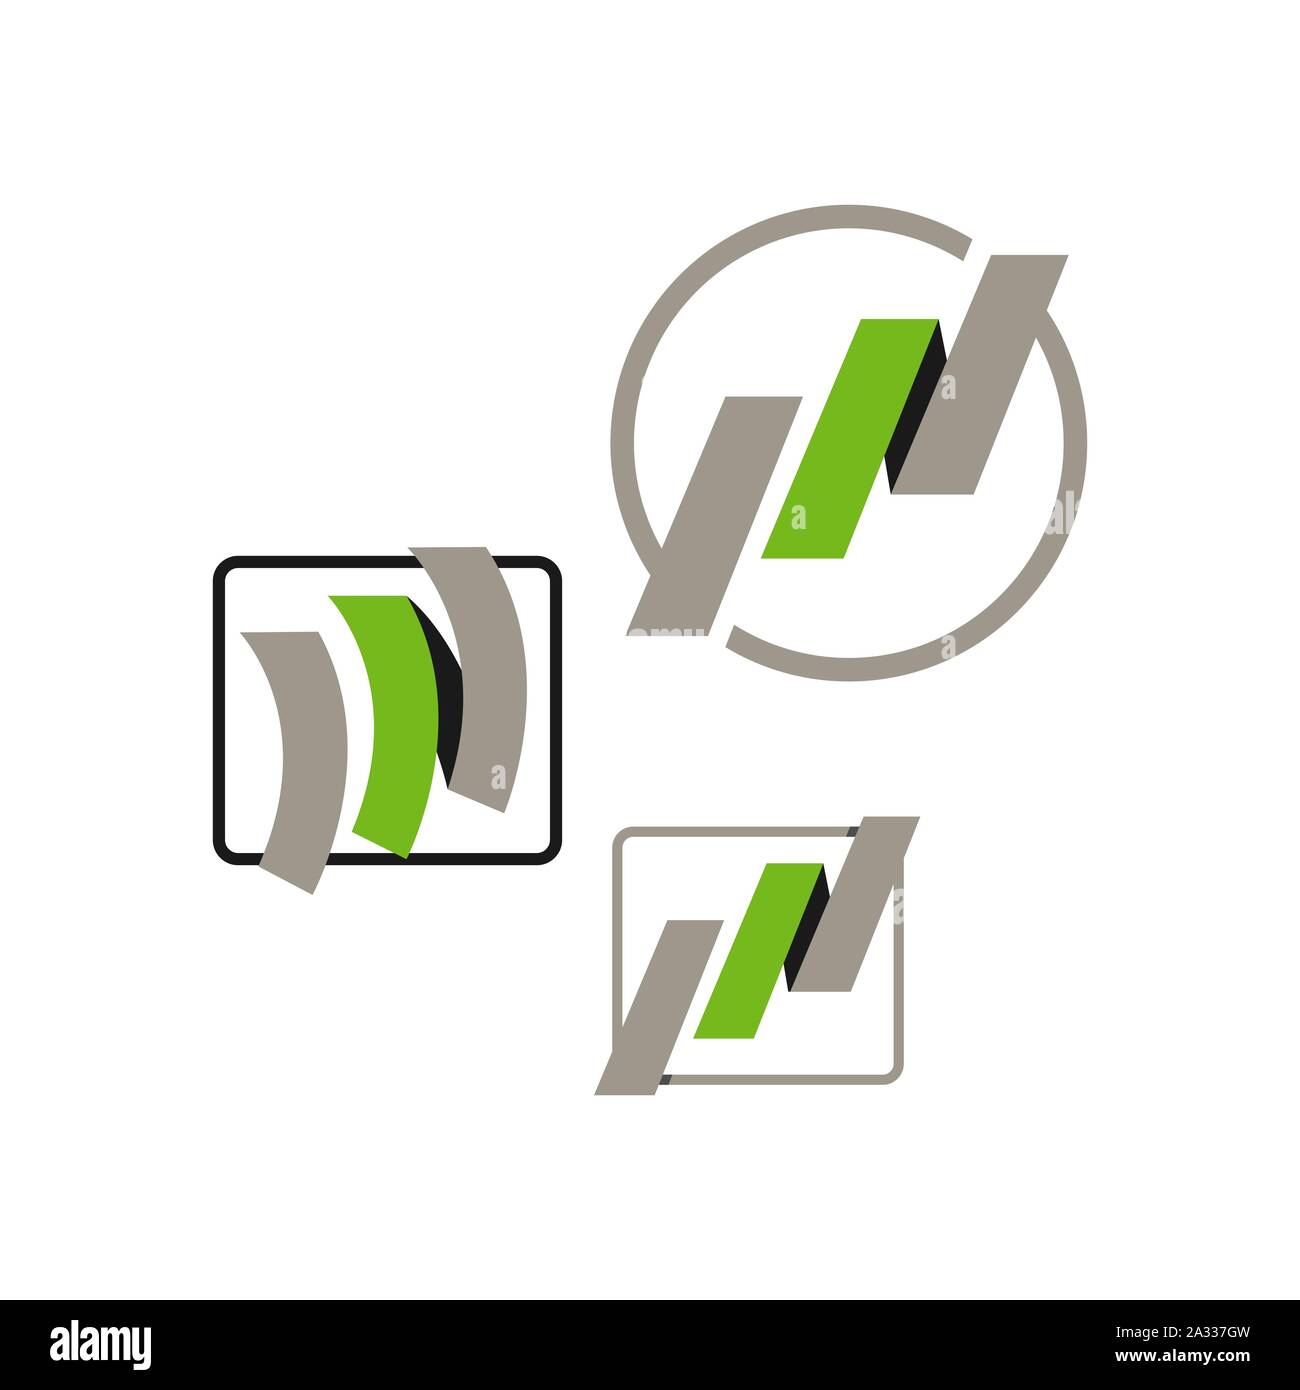 Modern creative idea of abstract building logo design vector illustration Stock Vector